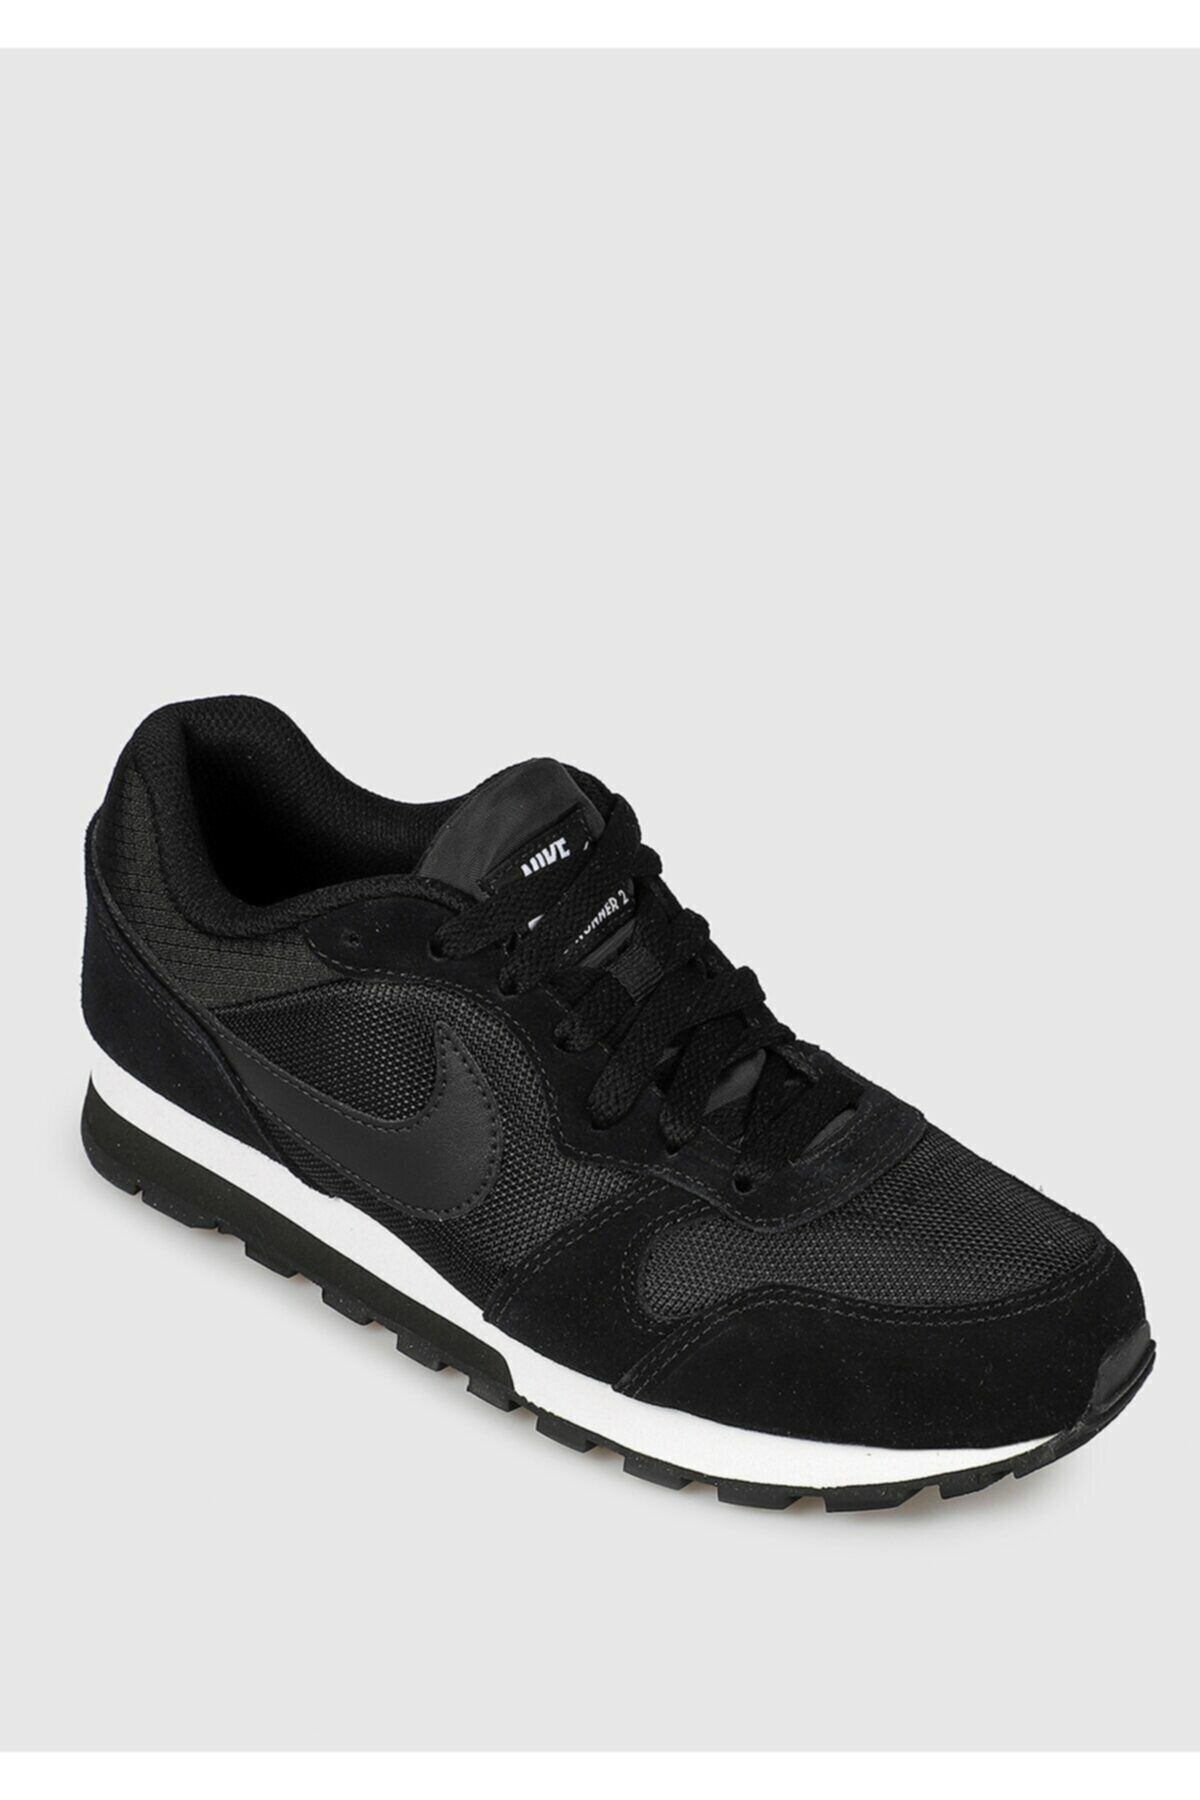 Nike Md Runner 2 Siyah Kadın Koşu Ayakkabısı 749869-001